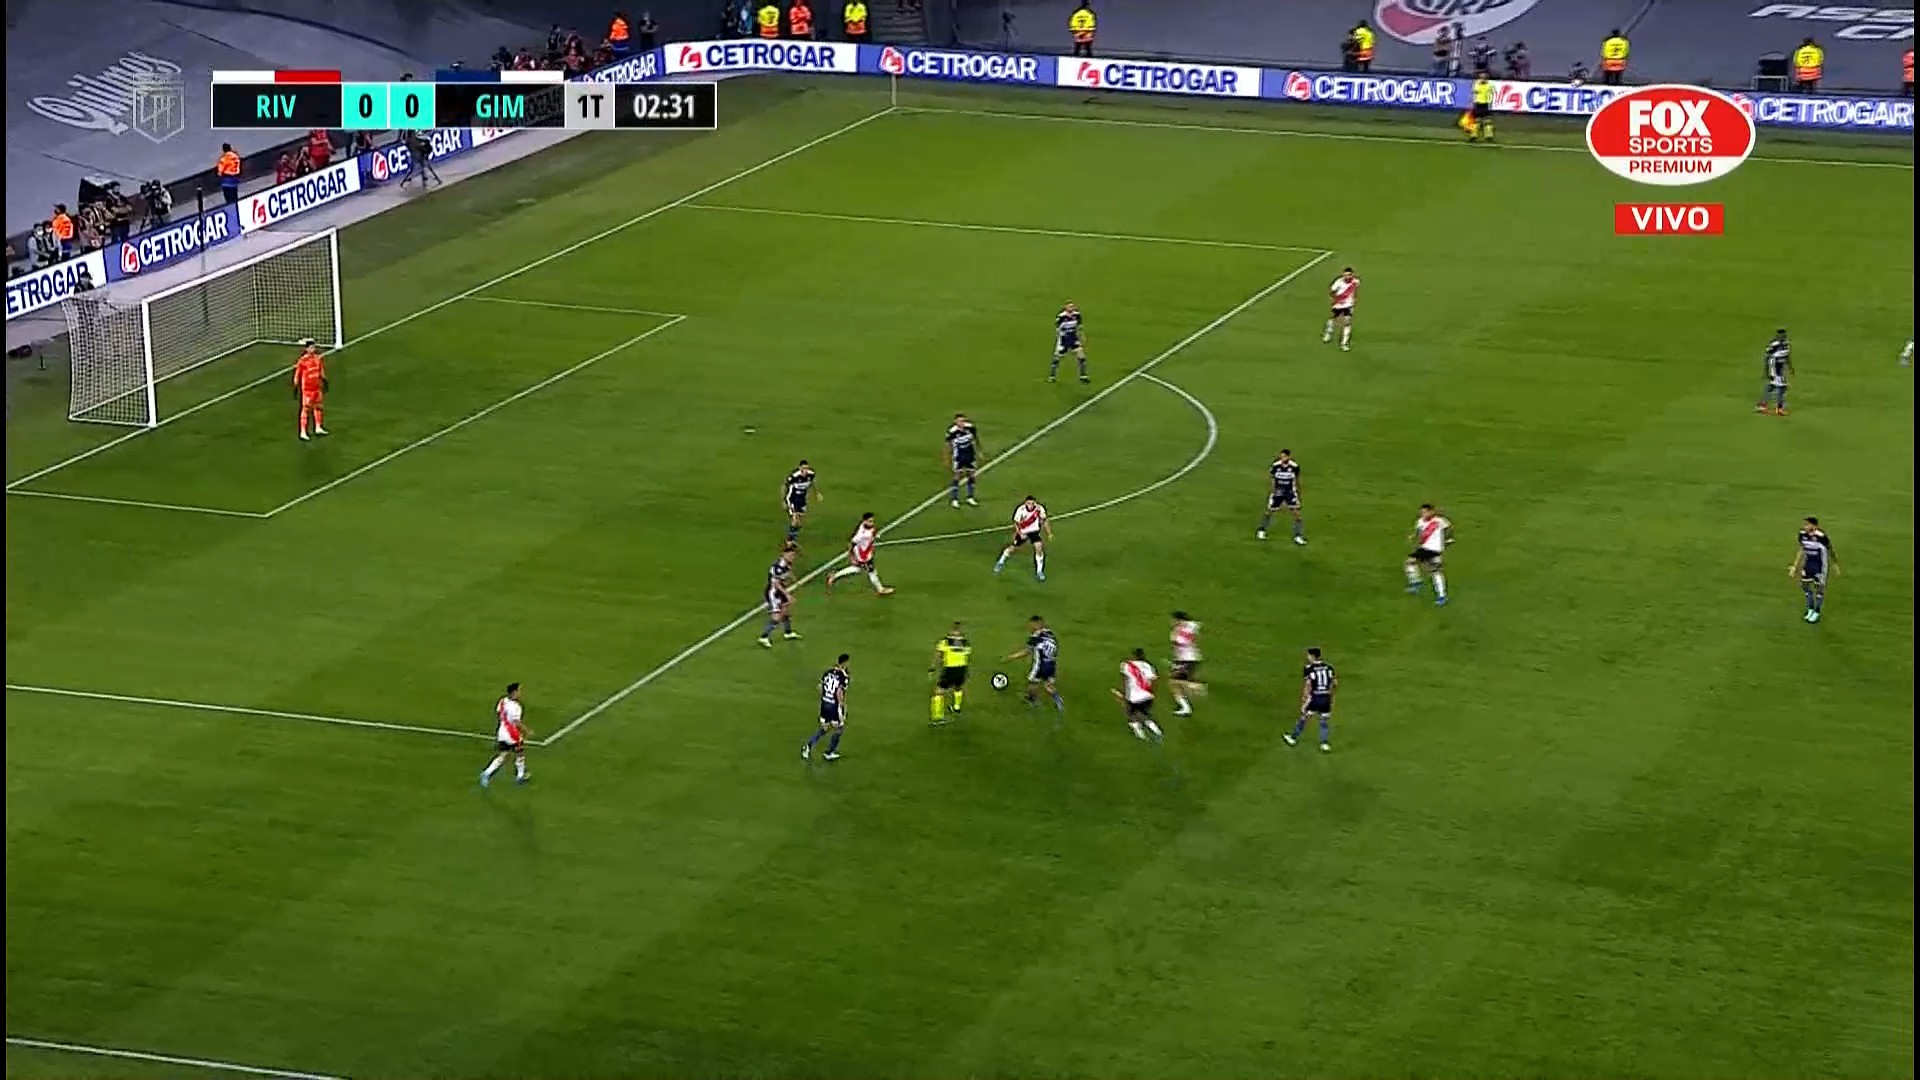 Repare na quantidade de jogadores do River Plate próximos a bola no momento em que perde a posse. 